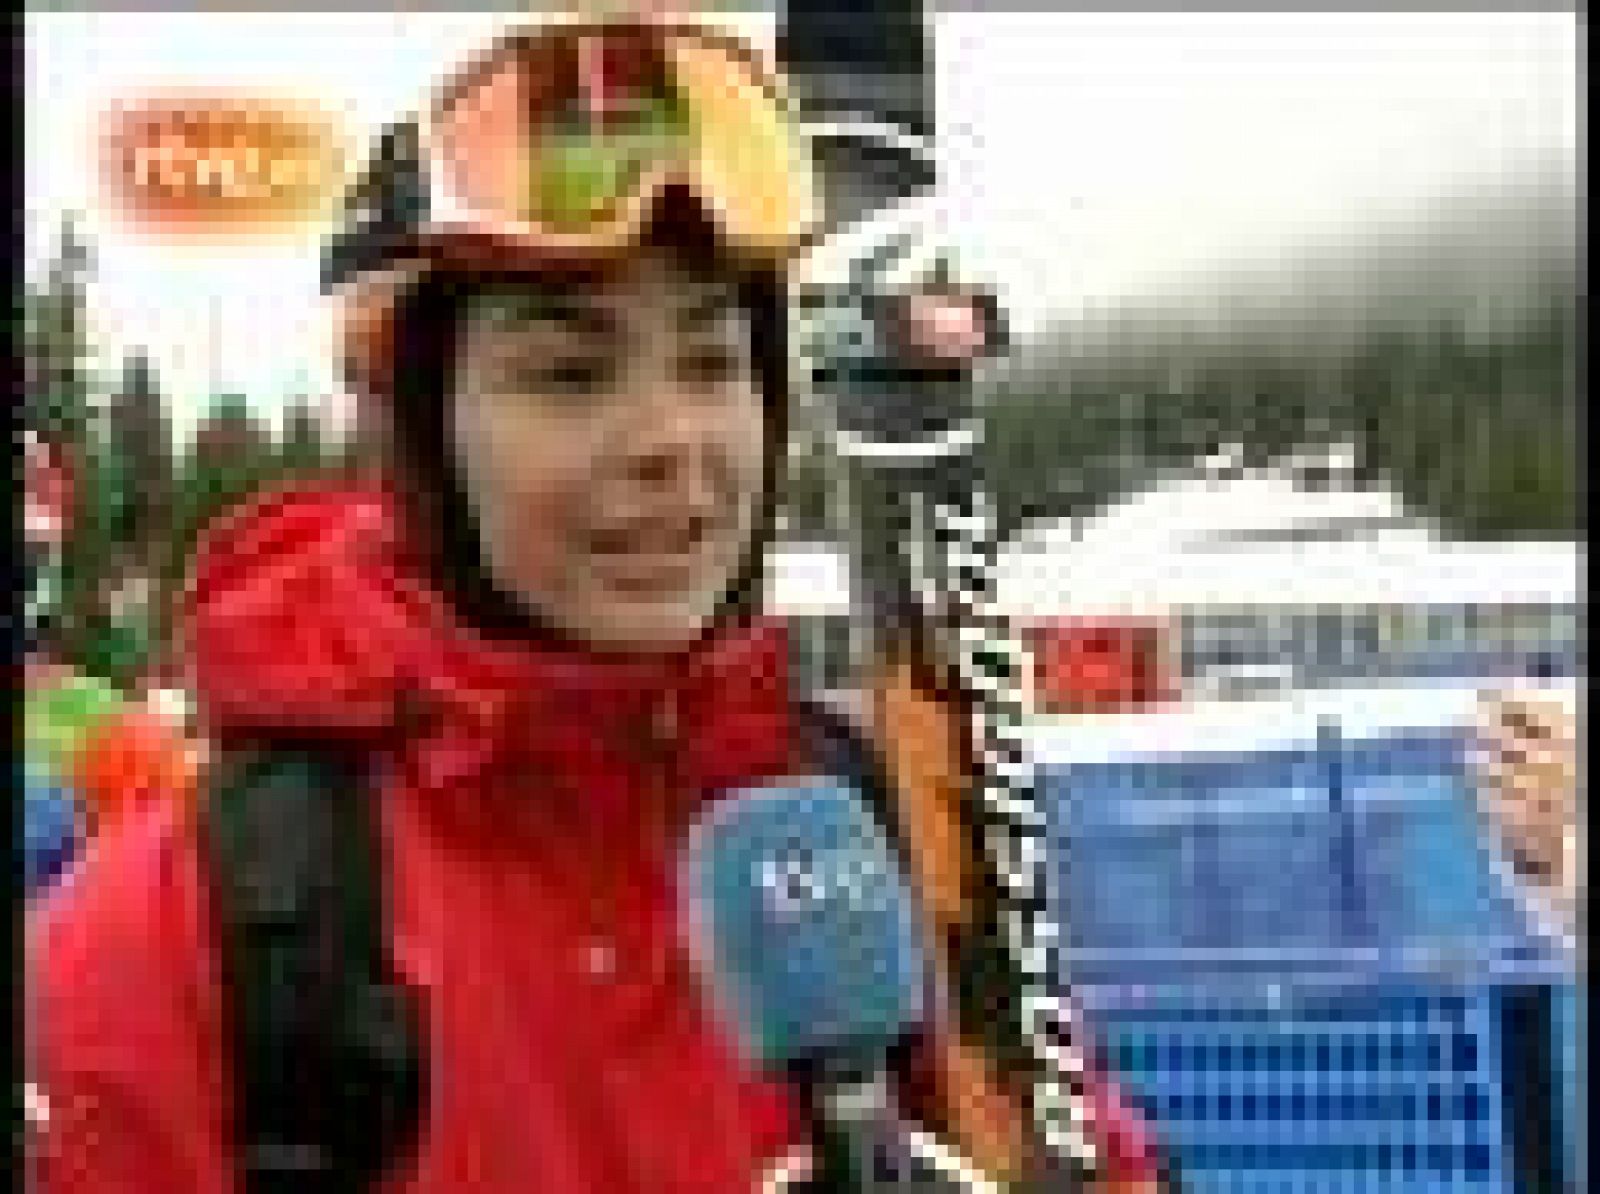 La esquiadora granadina María José Rienda se despide ante las cámaras de TVE de los Juegos Olímpicos después de cuatro participaciones. Sin embargo avisa de que aún se mantendrá un año más en activo.